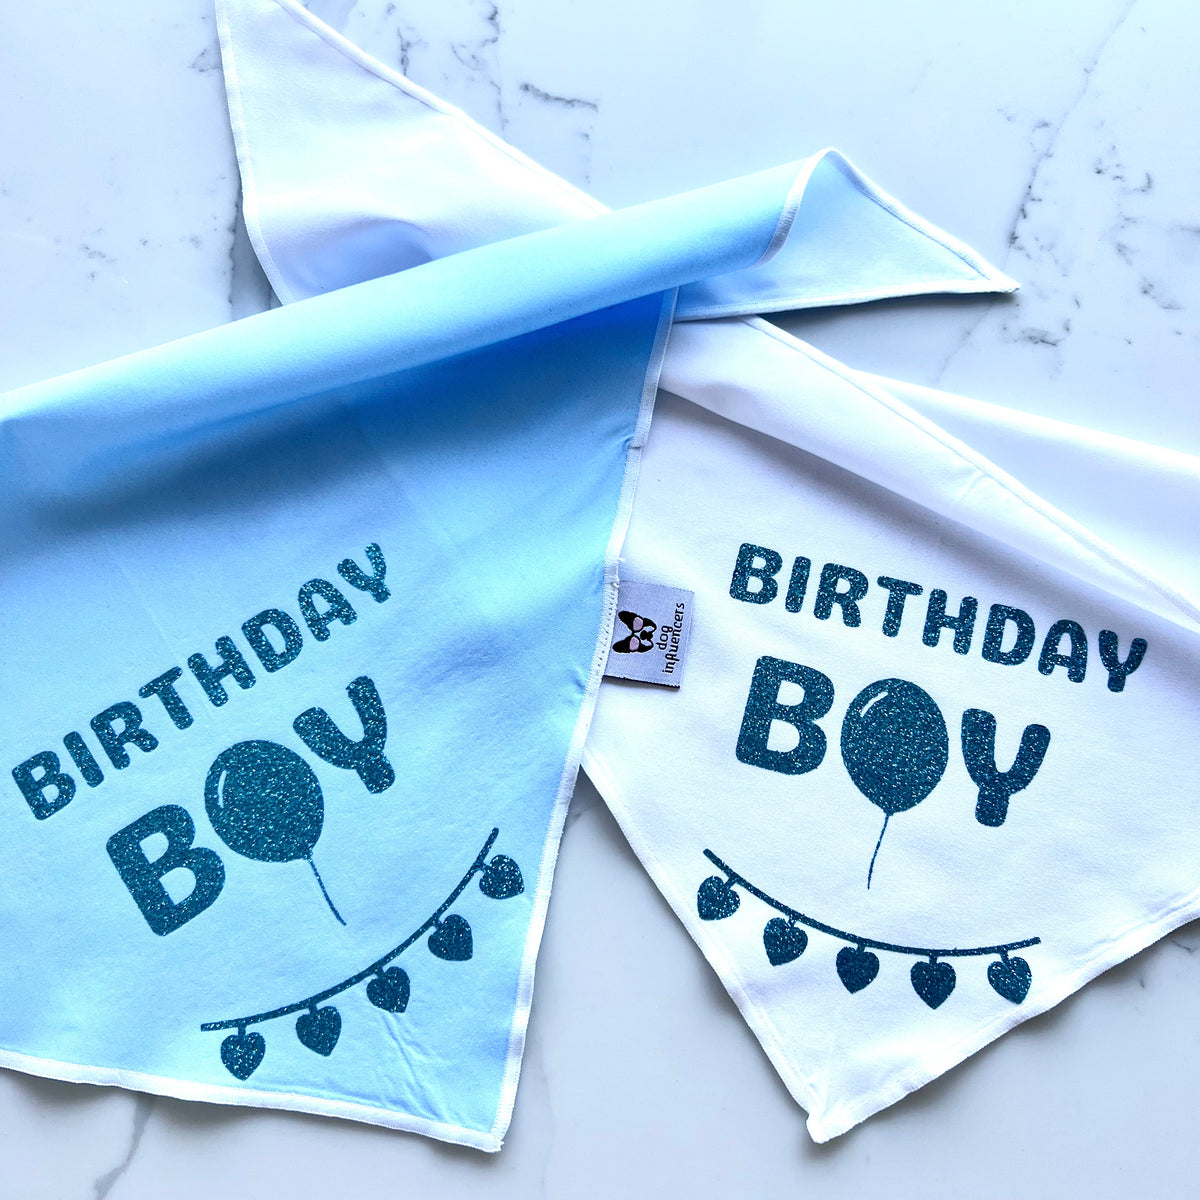 Birthday Dog Bandana, "Birthday Boy", Birthday Party Male Dog Bandana, Blue